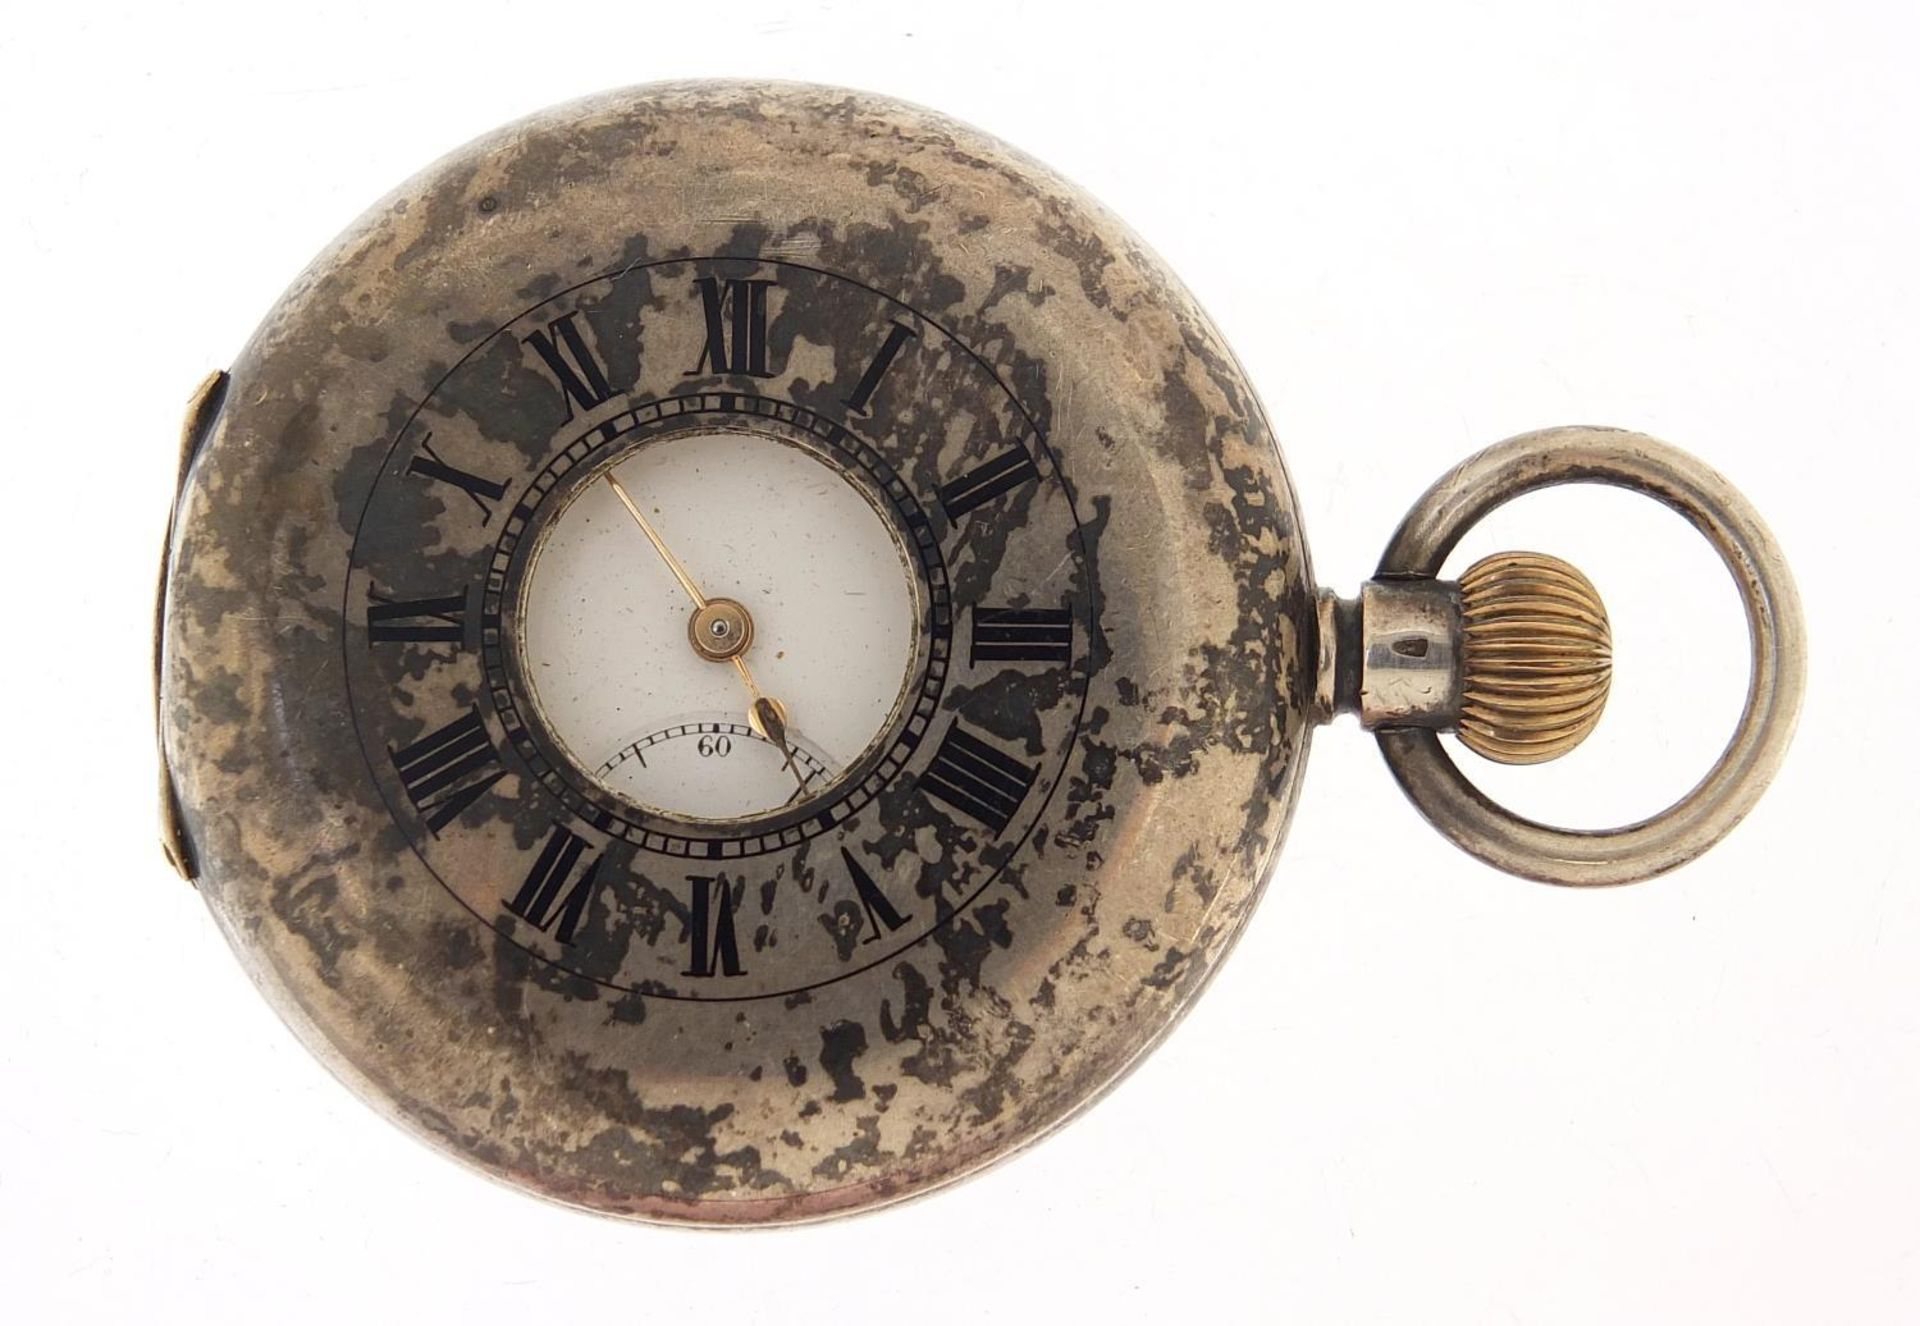 Gentlemen's silver half hunter pocket watch with enamel dial, 49mm in diameter